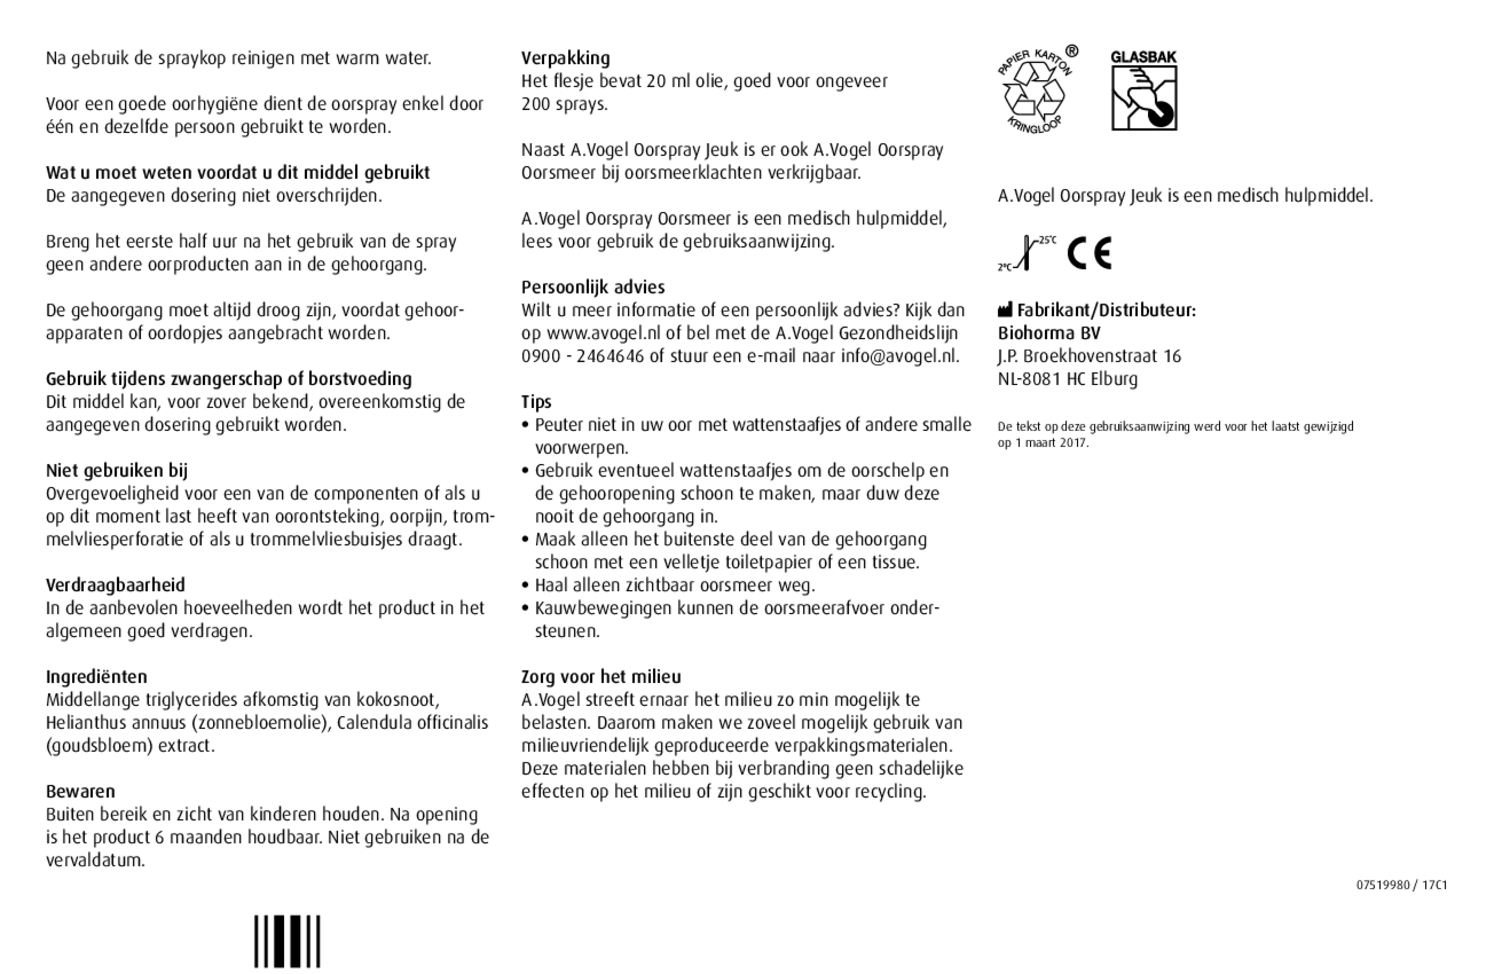 Oorspray Oorsmeer 20ML + Oorspray Jeuk 20ML Combiverpakking afbeelding van document #4, gebruiksaanwijzing